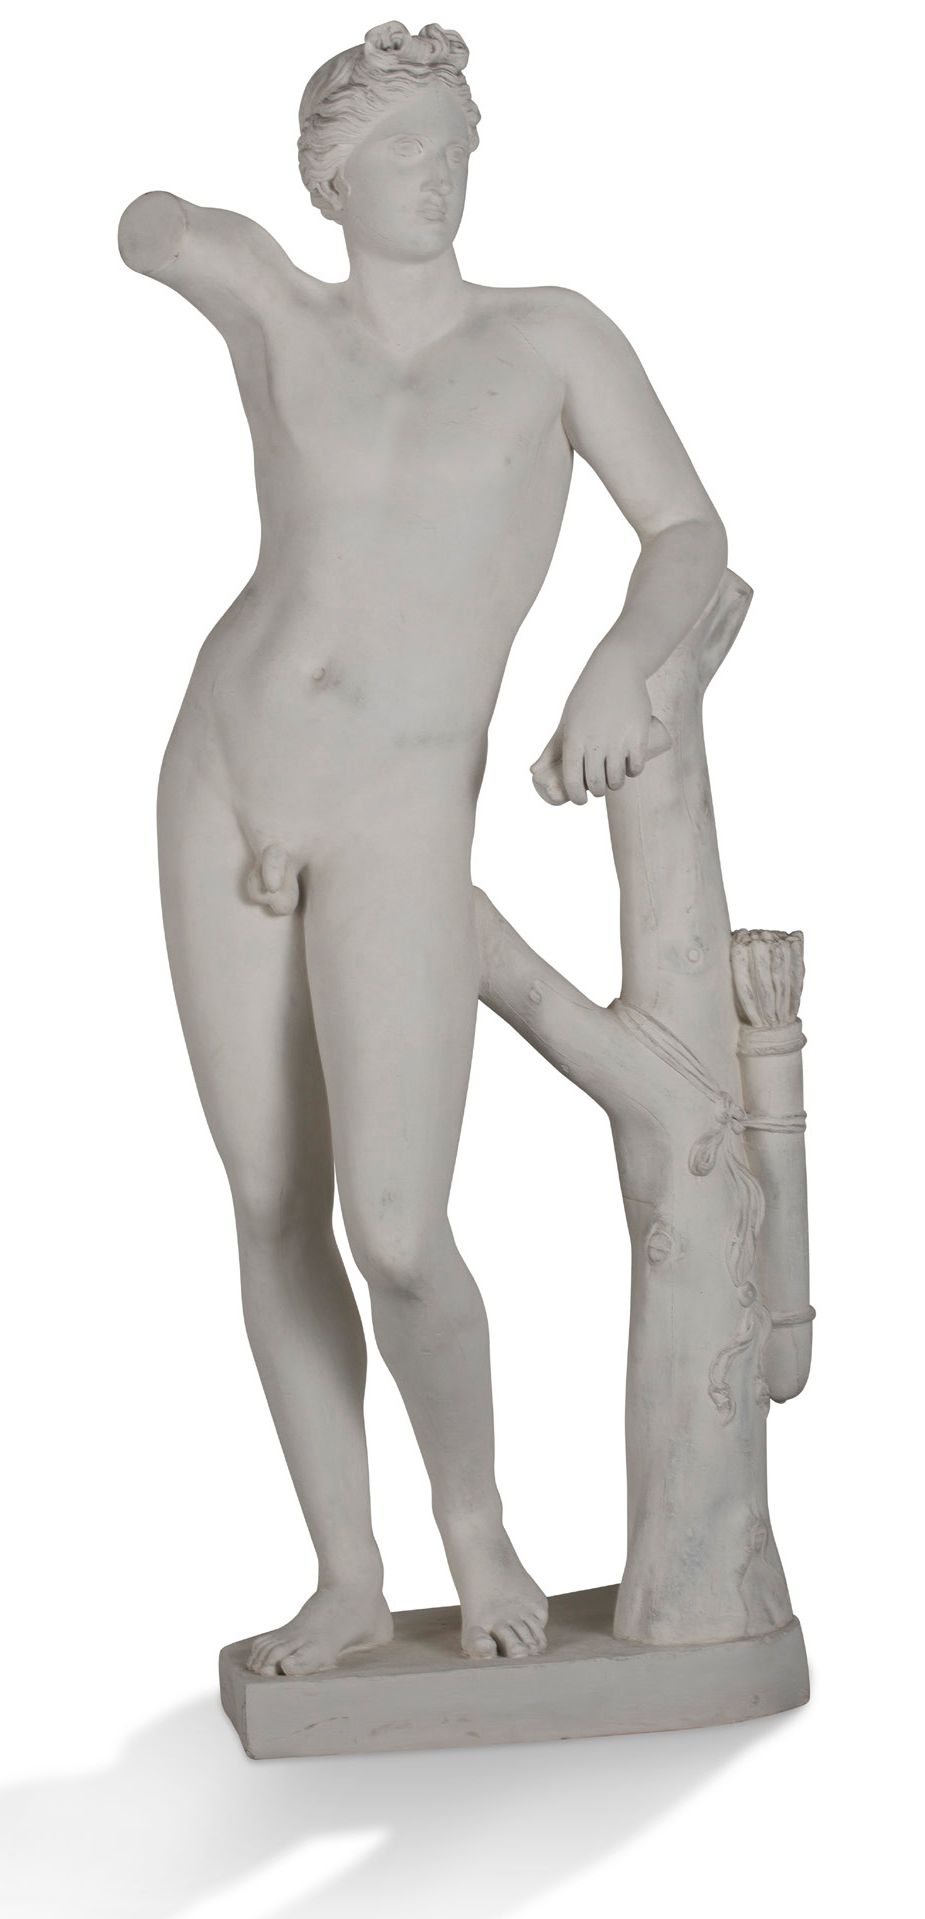 Null [GLAS]
Apollino nach der antiken römischen Gruppe im Museum der Uffizien in&hellip;